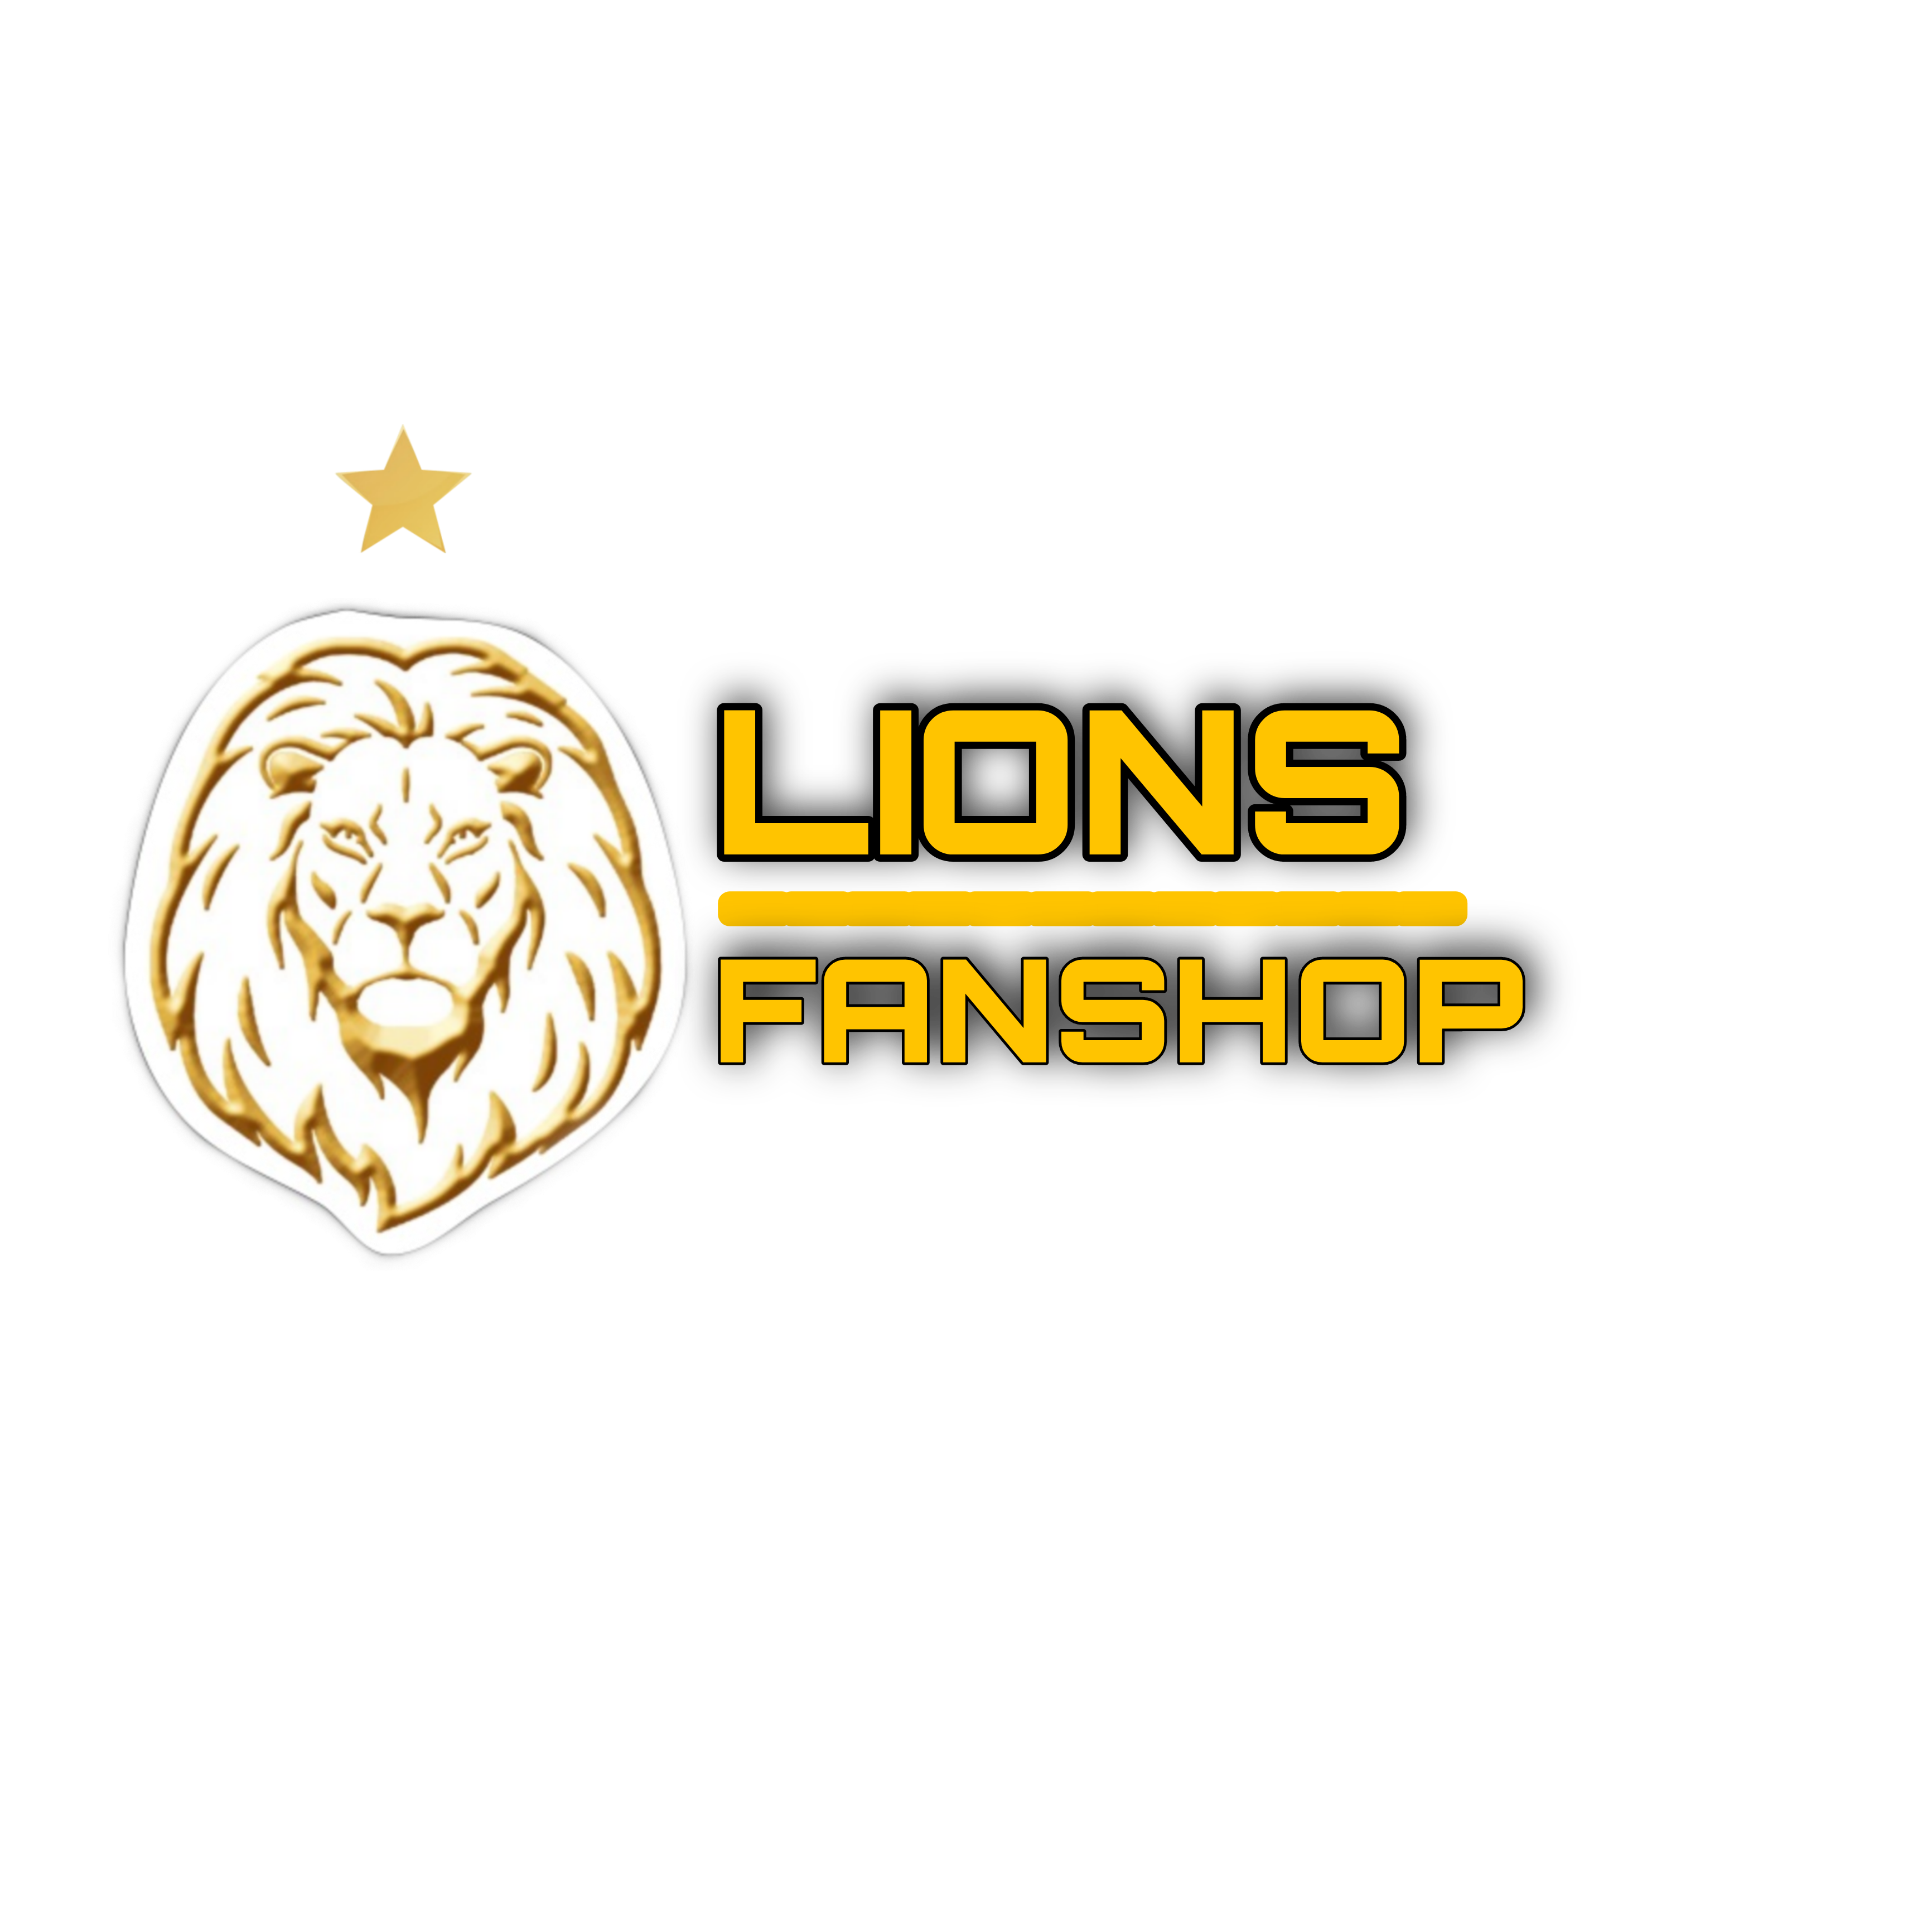 LIONS FANSHOP